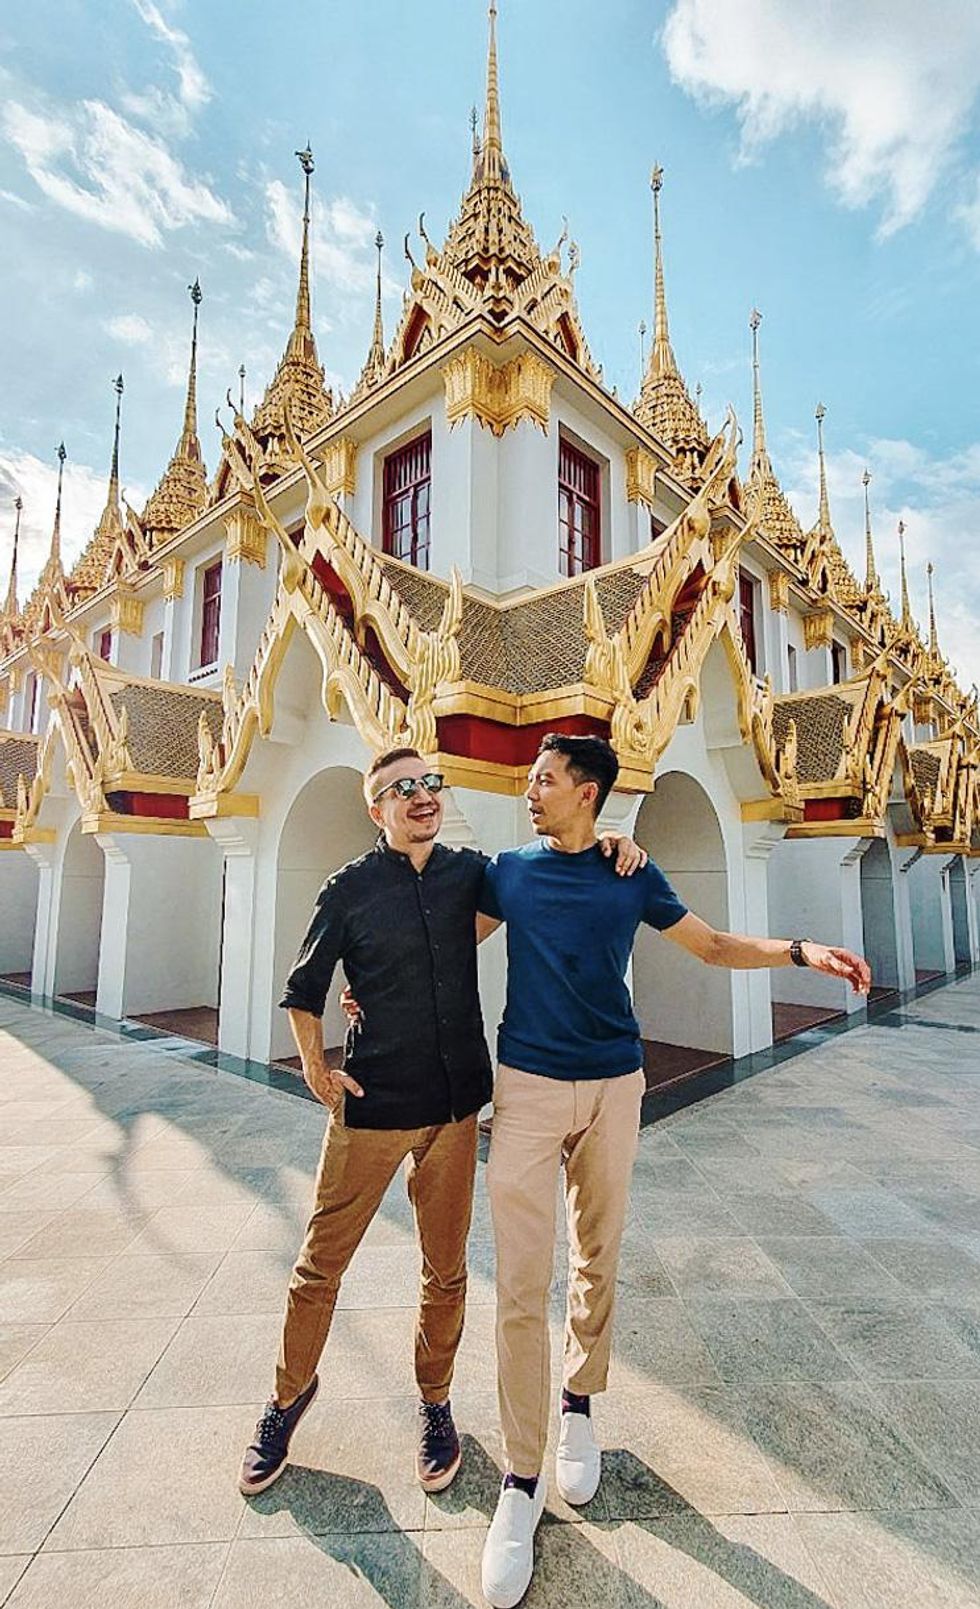 Loha Prasat Wat Ratchanatdaram Worawihan Temple Bangkok